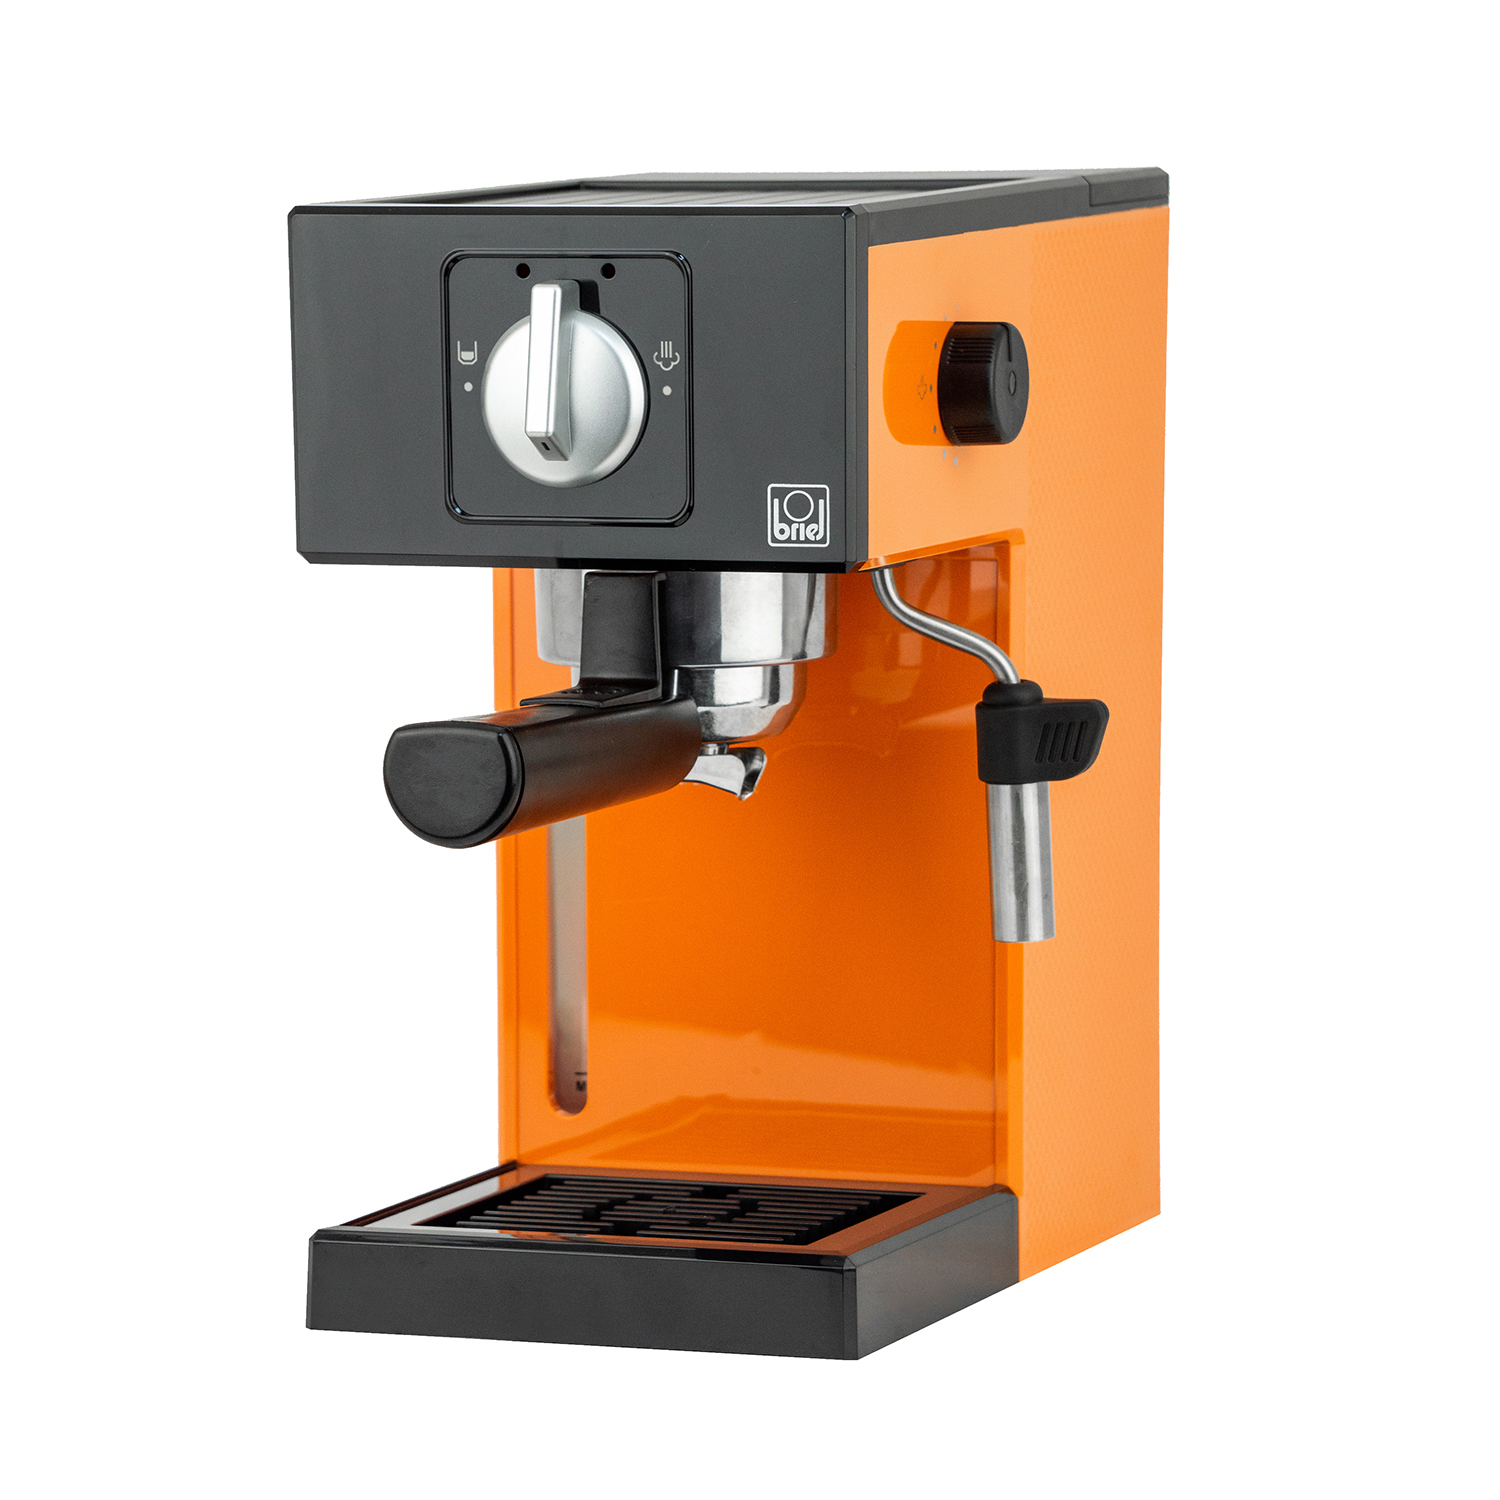 Maquina-cafe-espresso-A1-MANUAL-ORANGE-2.jpg